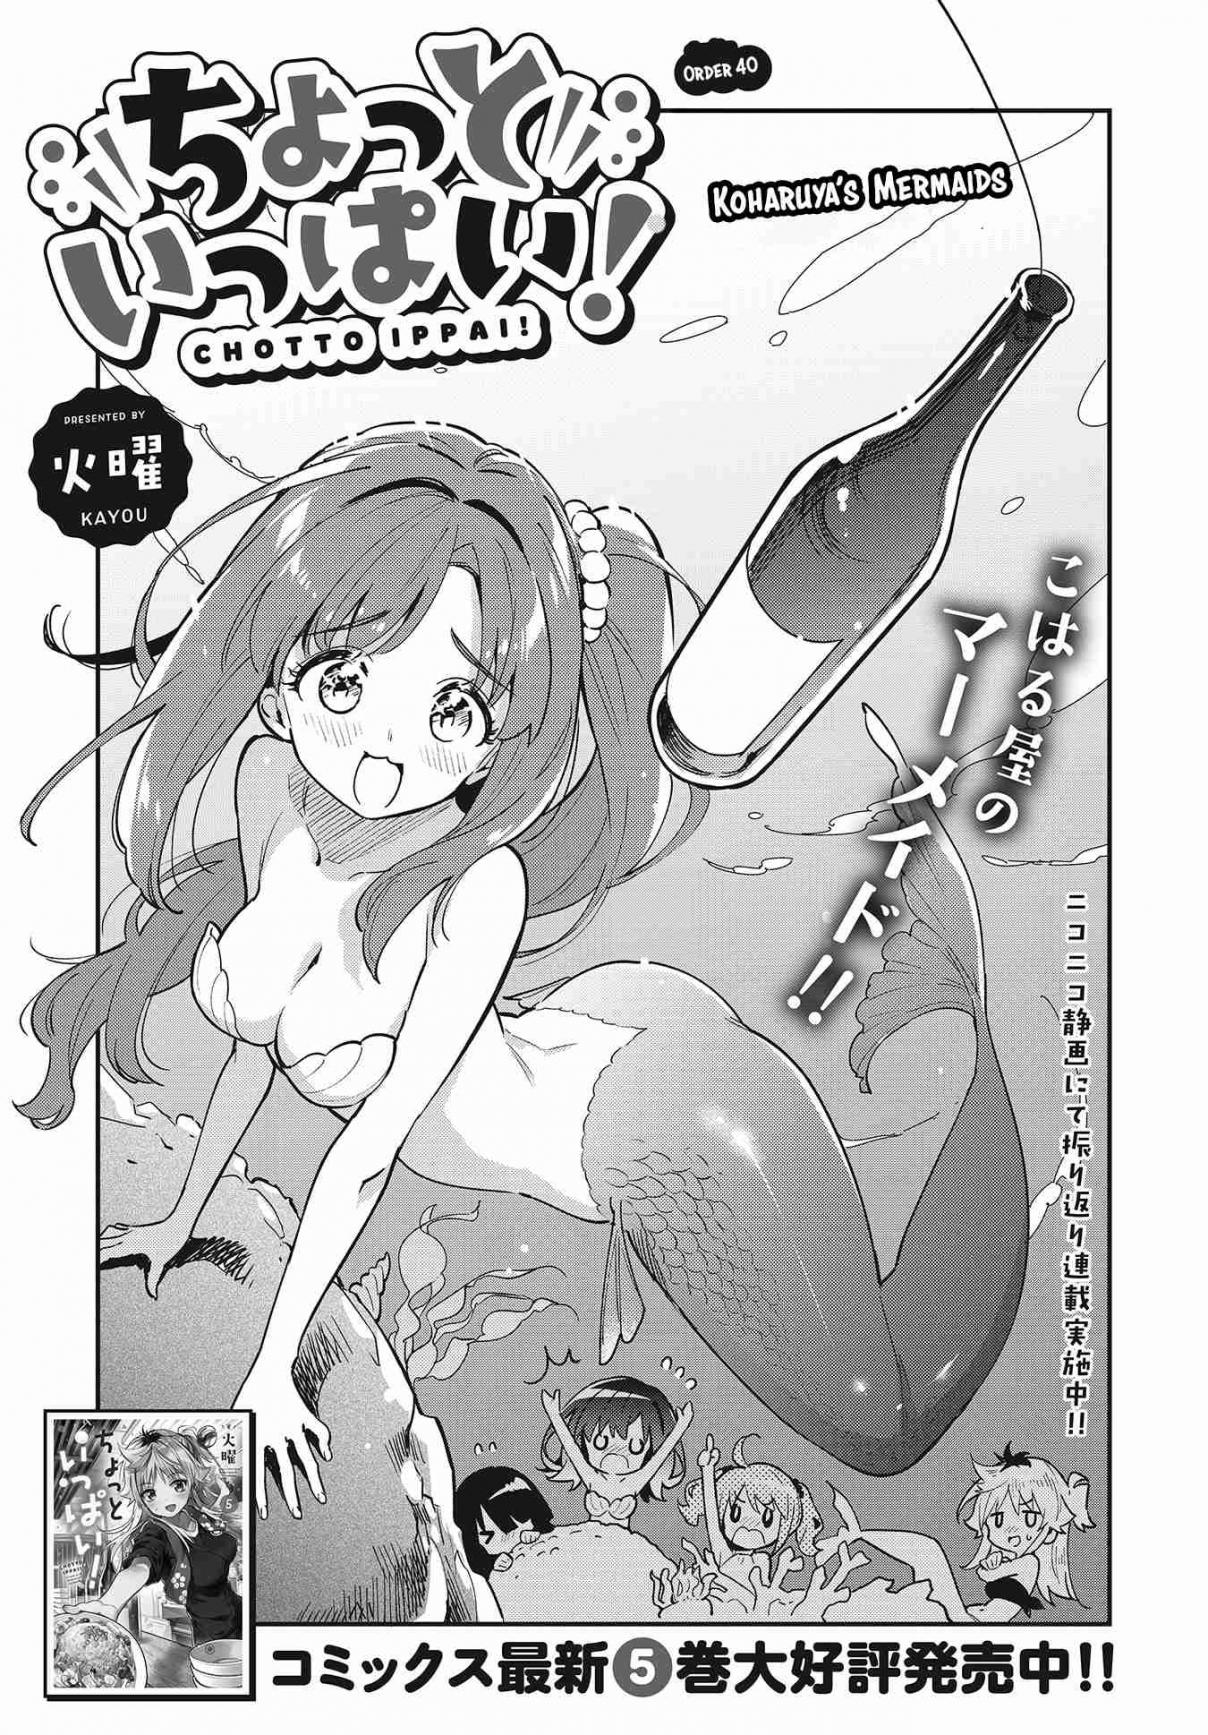 Chotto Ippai! Vol. 6 Ch. 40 Koharuya's mermaids